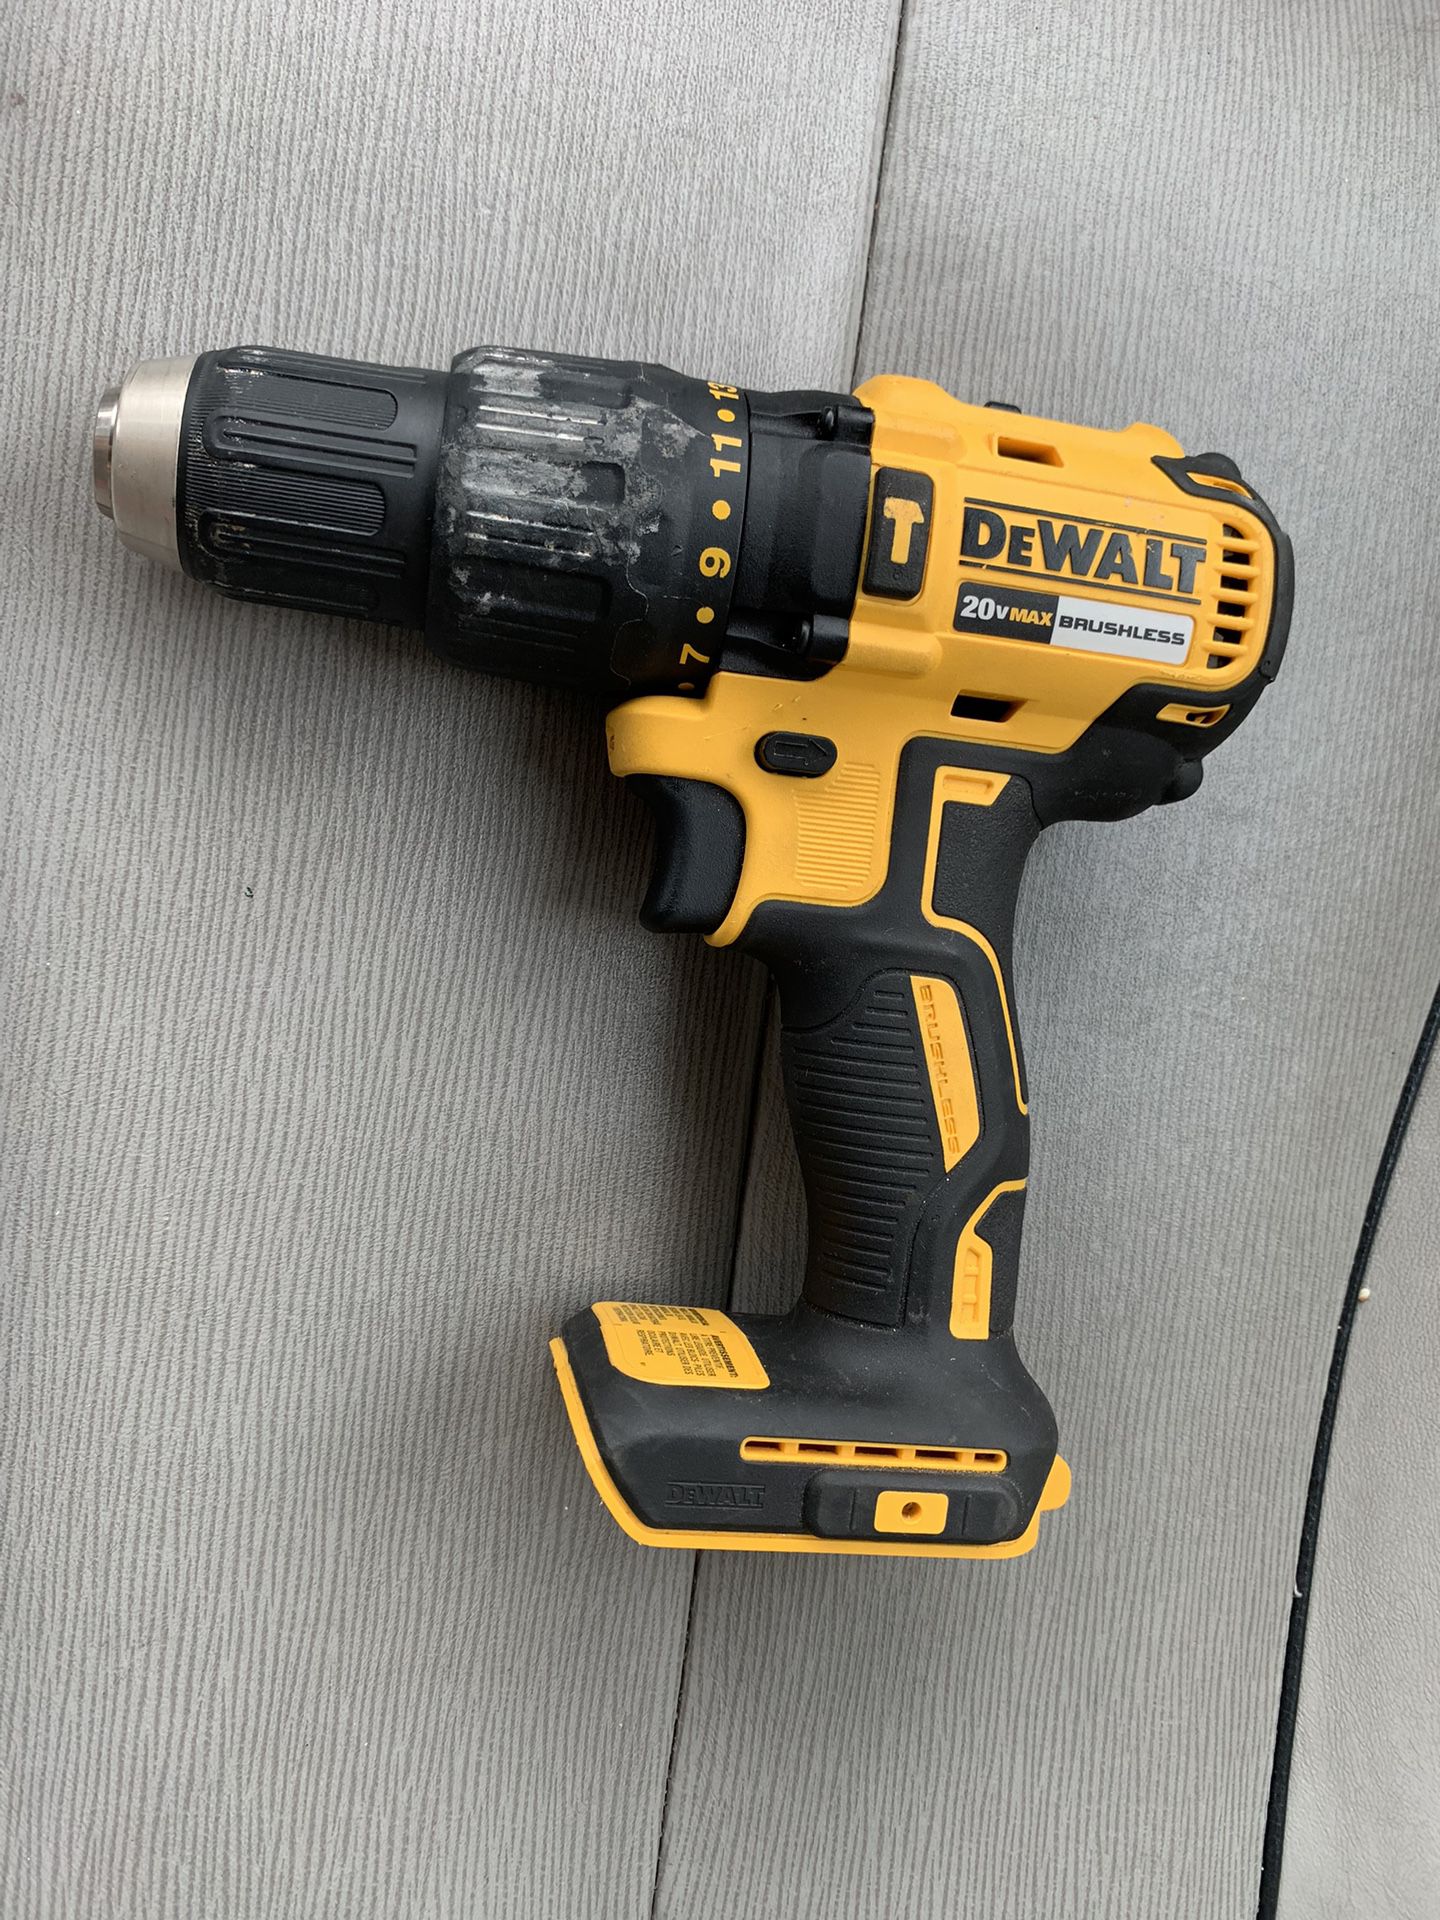 Dewalt DCD778 20v brushless Hammer drill